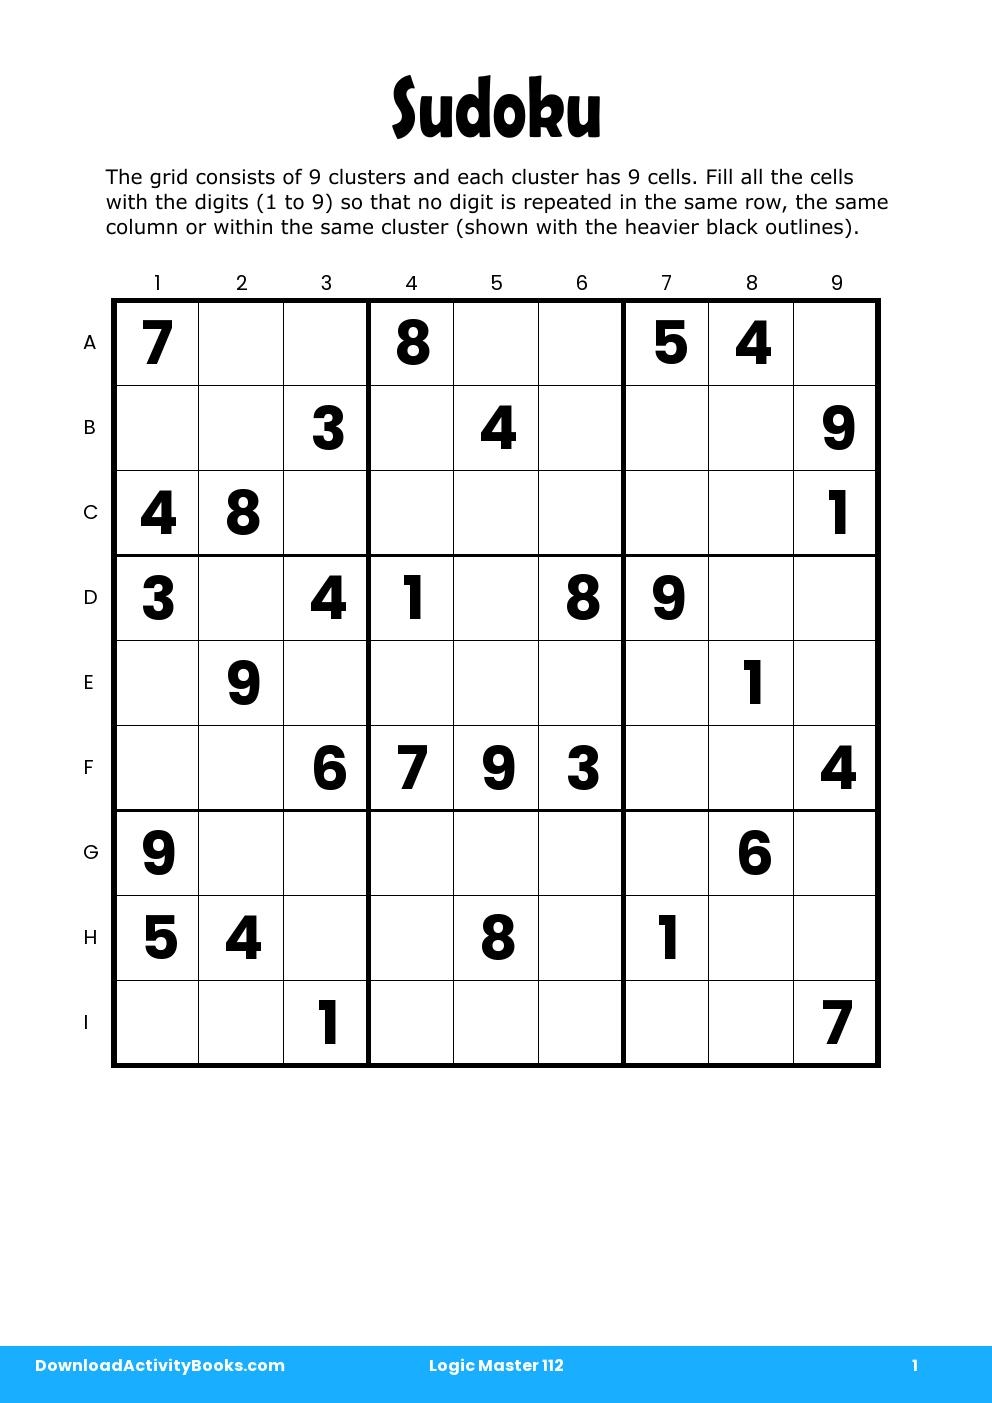 Sudoku in Logic Master 112